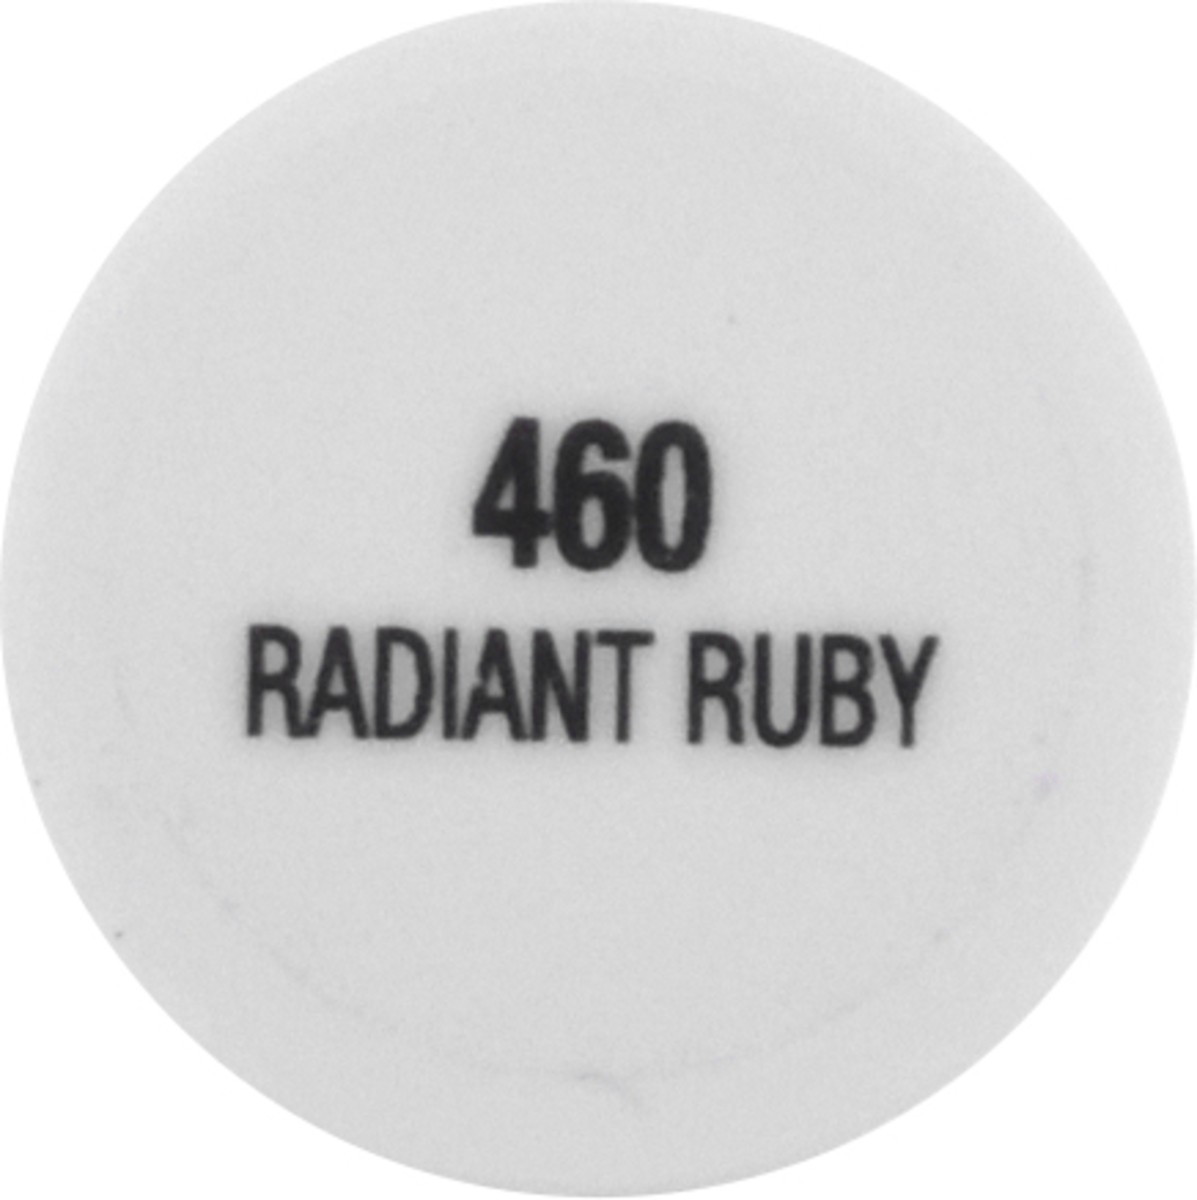 slide 5 of 11, L'Oréal Brilliant Eyes Radiant Ruby 460 Liquid Shadow 0.1 oz, 0.1 oz